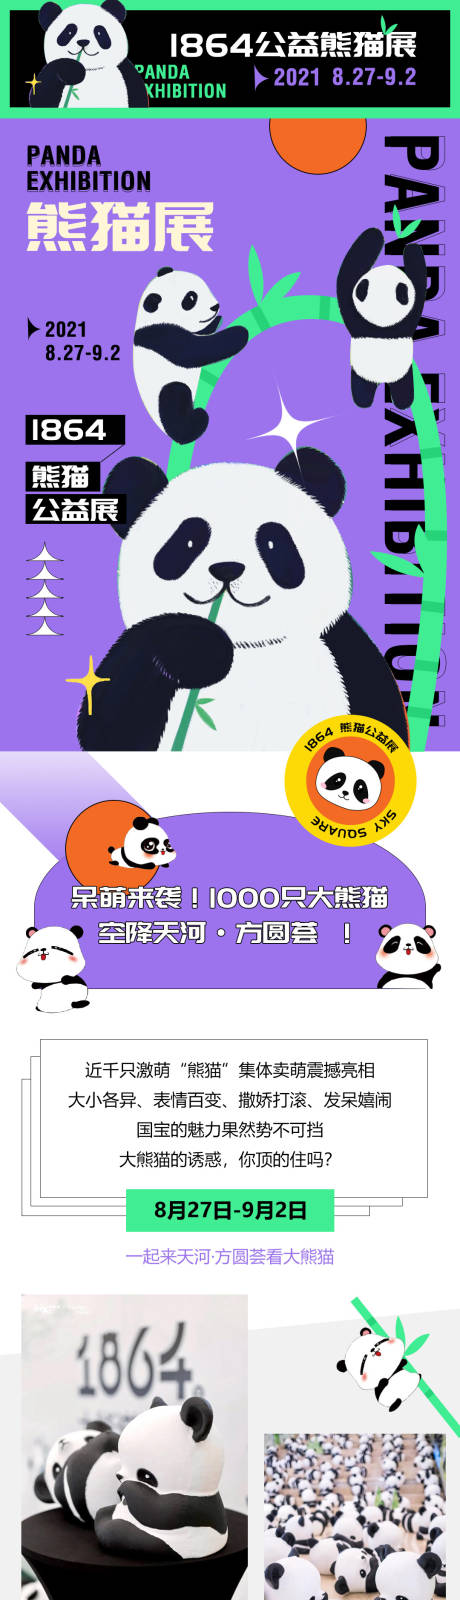 熊猫展公众号长图海报